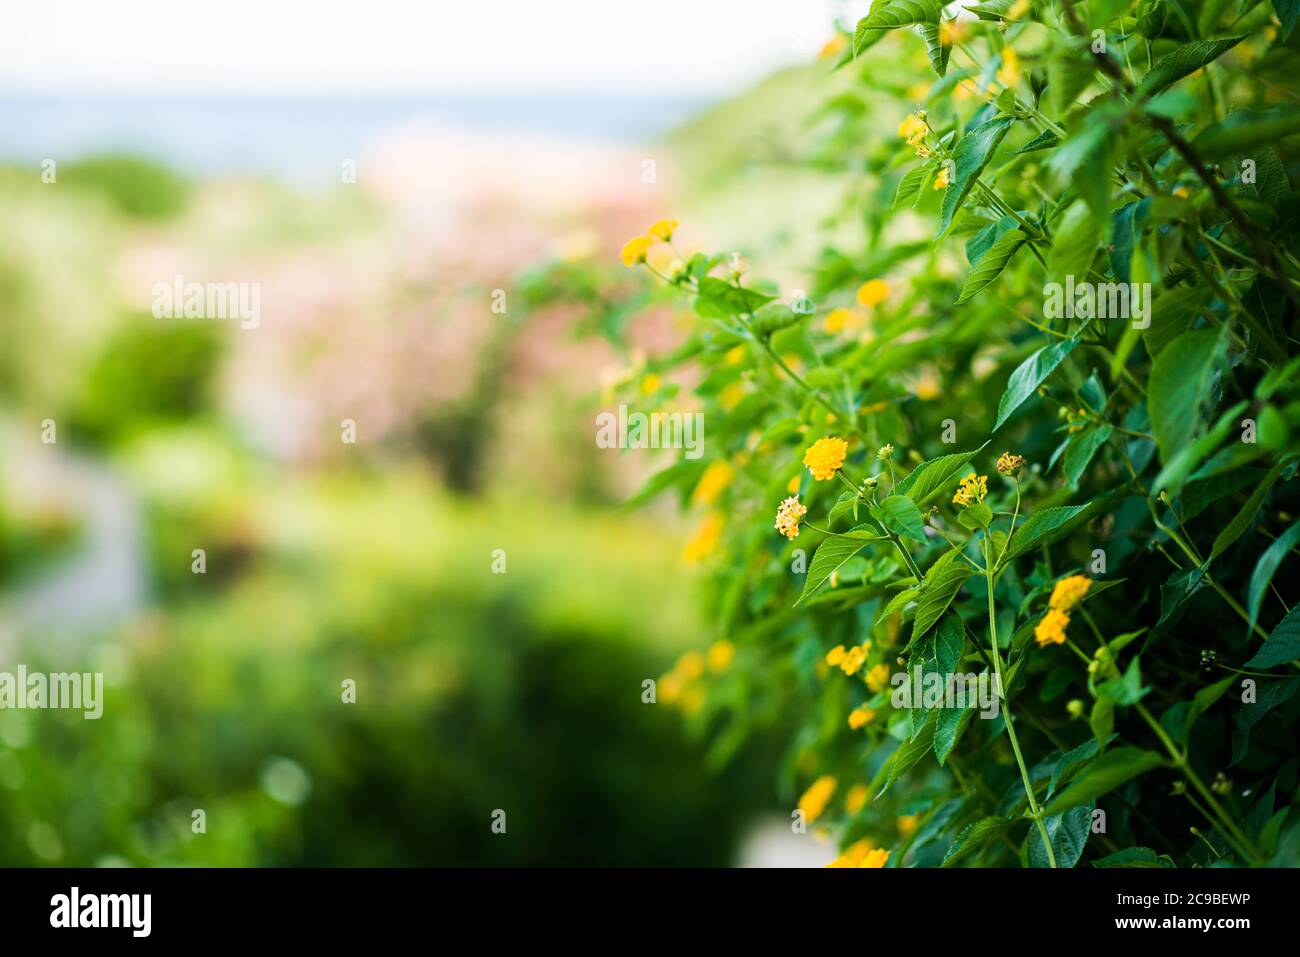 Floreciendo flores amarillas del Mediterráneo. Vista de primer plano. Fondo difuminado de color verde brillante. Foto de stock